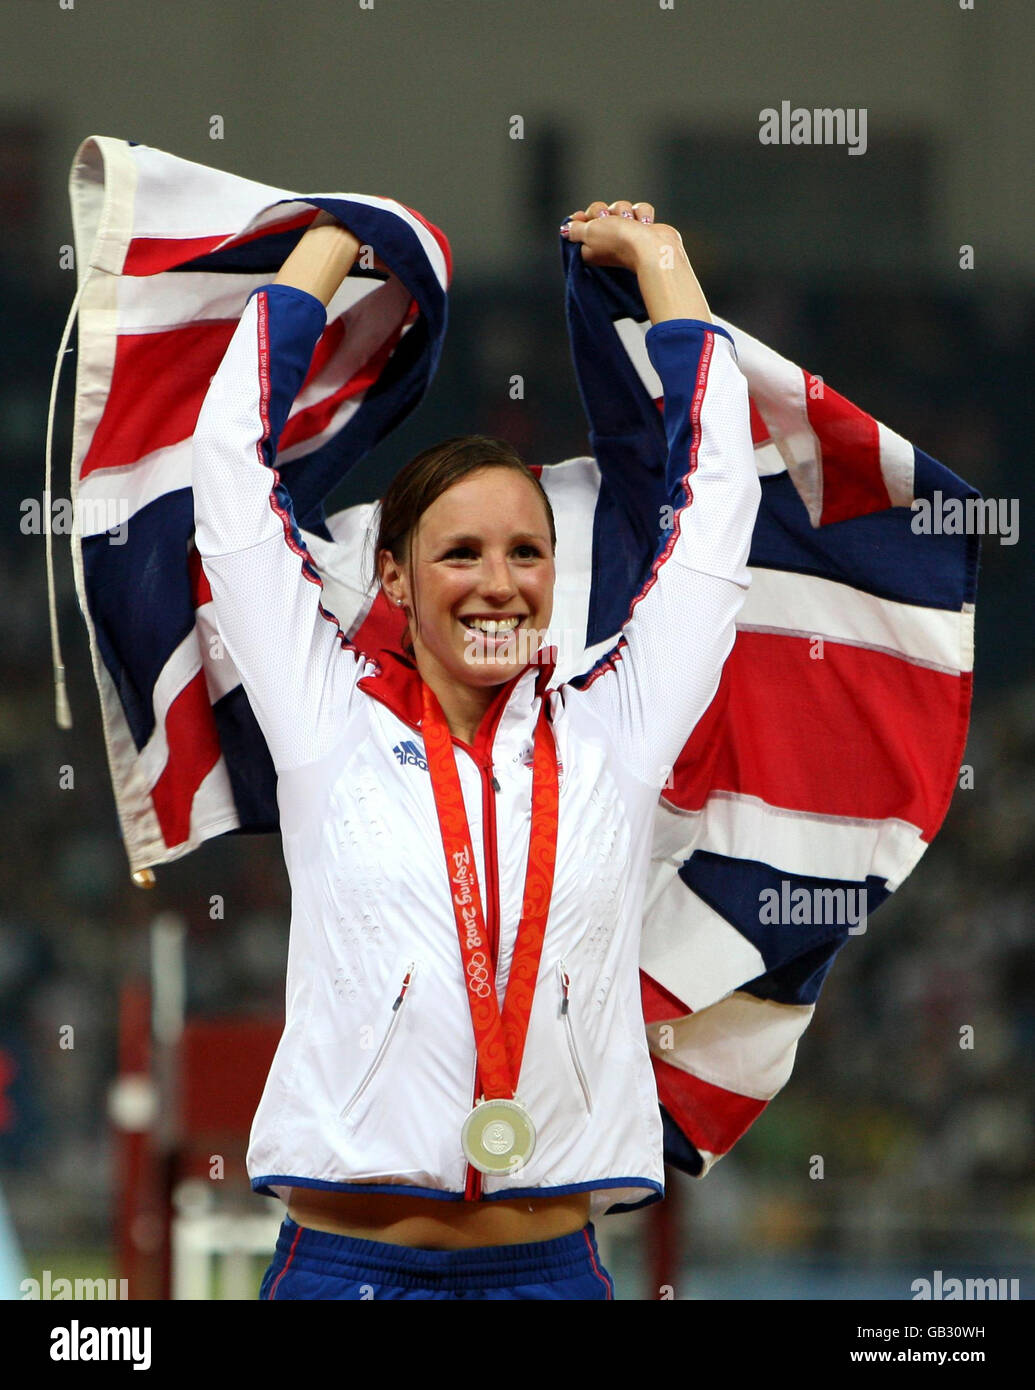 Die britische Heather Fell feiert ihre Silbermedaille, die sie bei den Olympischen Spielen in Peking 2008 im Women's Modern Pentathlon gewonnen hat. Stockfoto